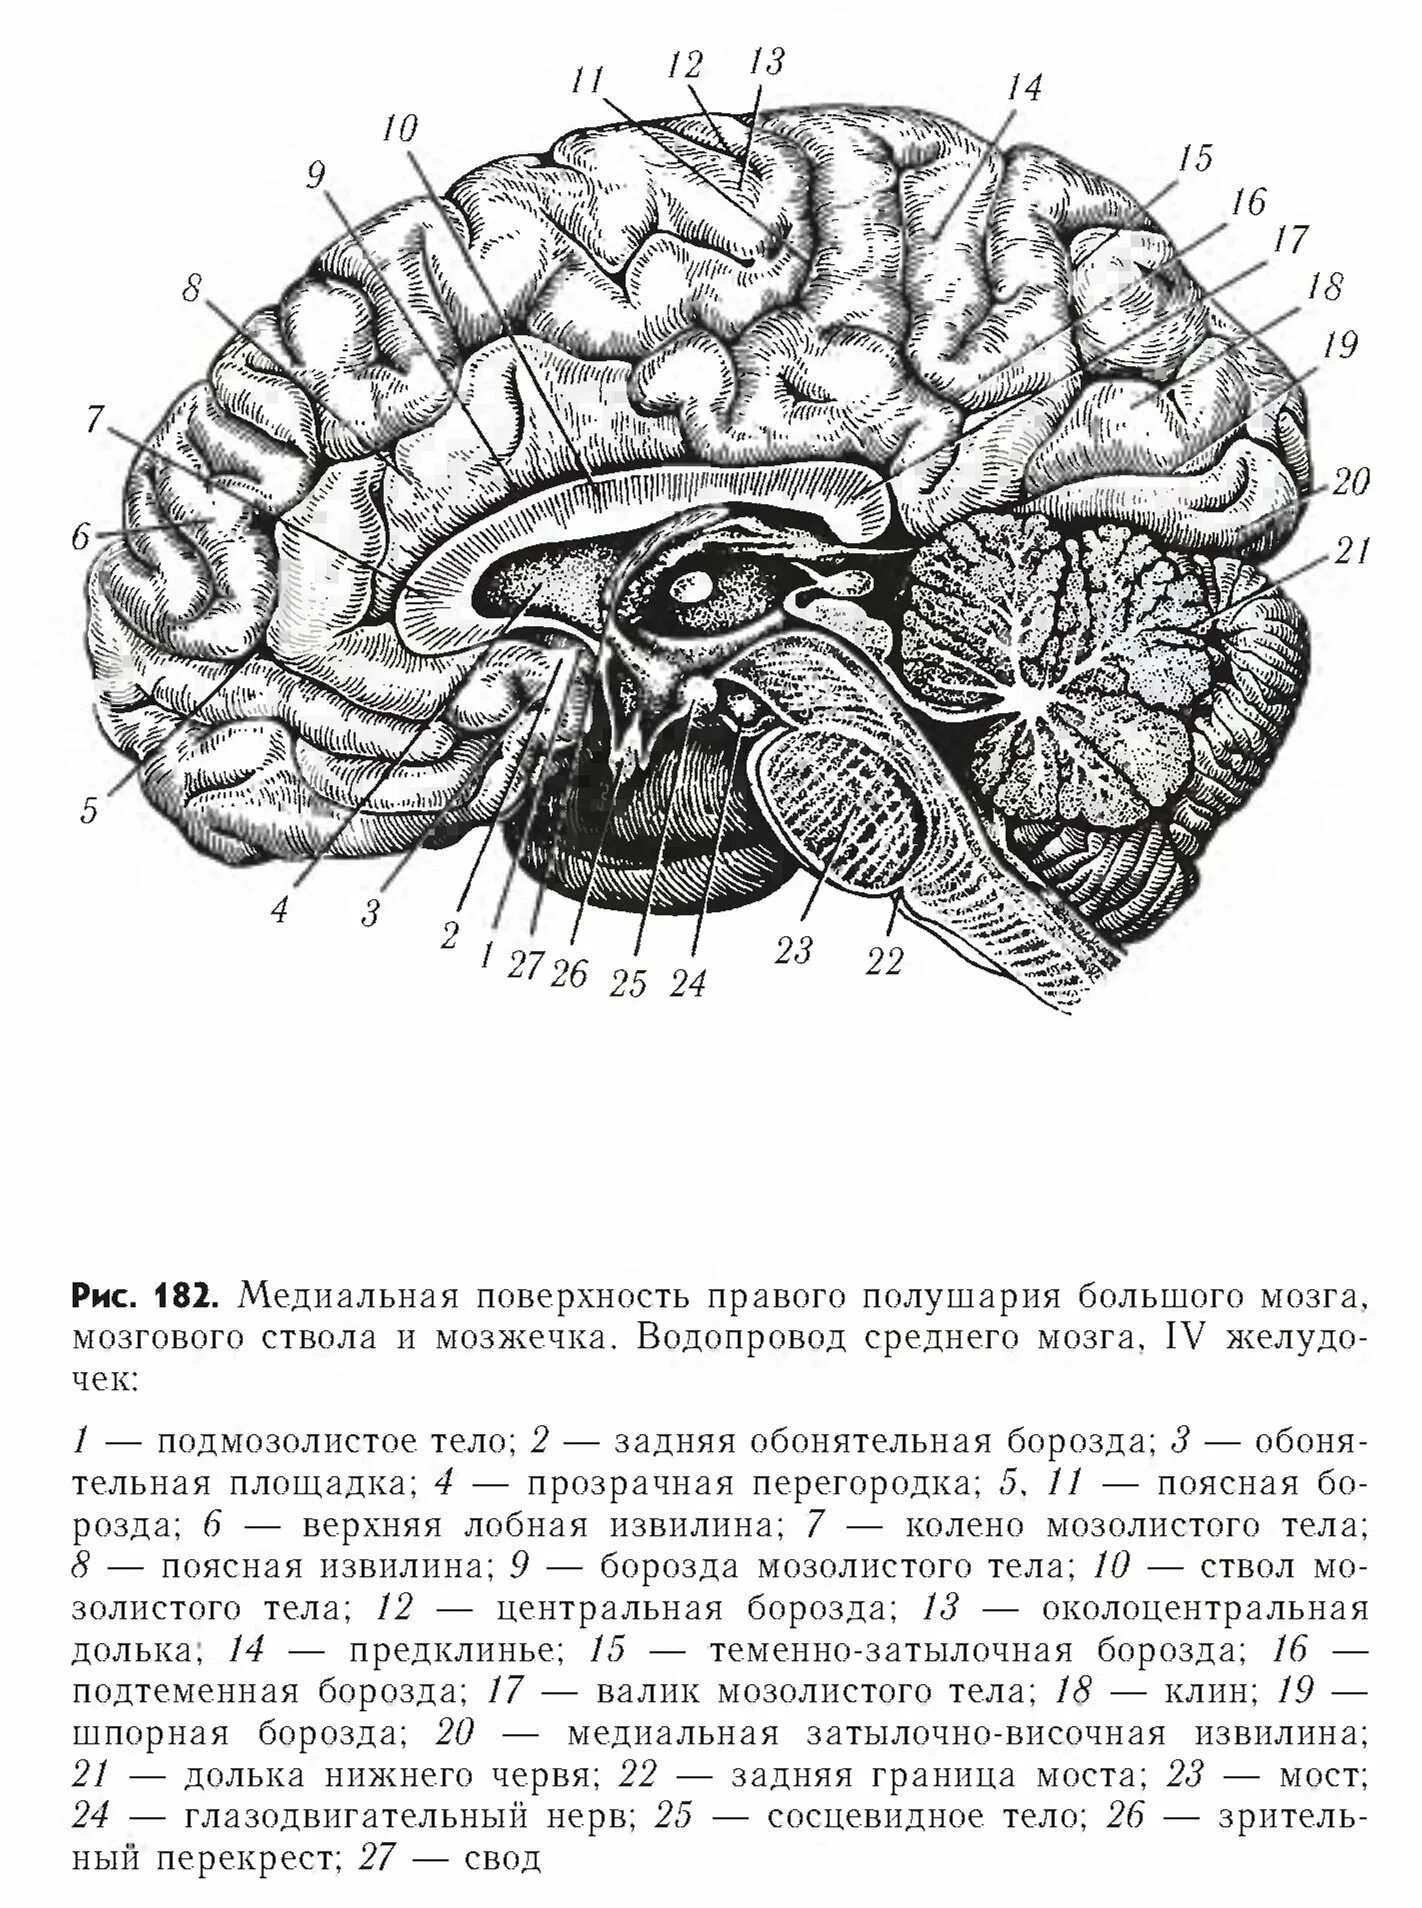 Медиальная поверхность мозга. Медиальная поверхность головного мозга анатомия. Медиальная поверхность головного мозга рисунок. Медиальный разрез головного мозга. Складчатая поверхность головного мозга